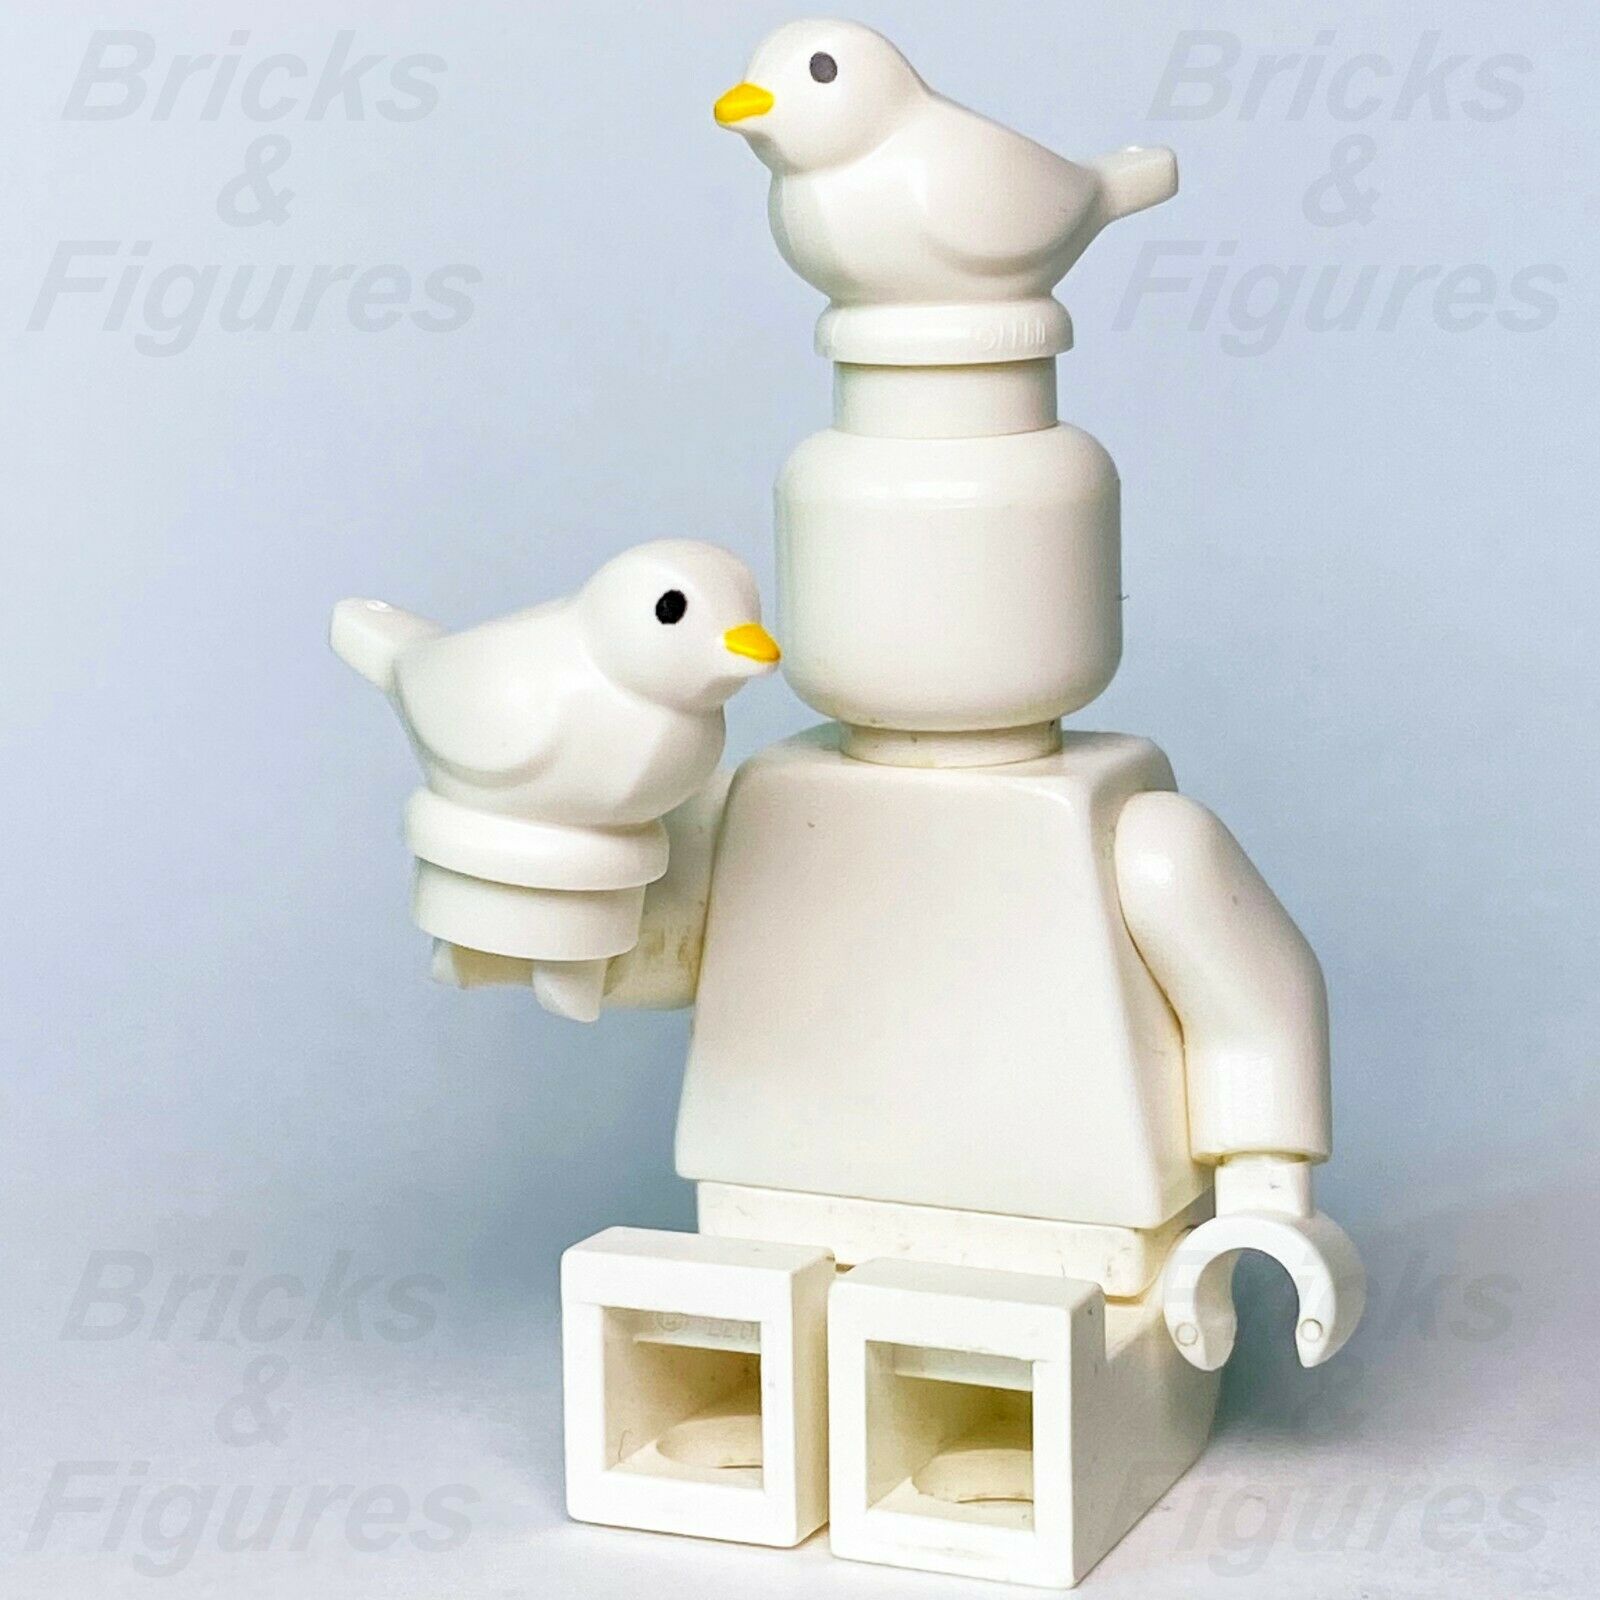 2 x Town City Ideas LEGO Small White Bird Orange Beak Animal 21324 60250 21318 - Bricks & Figures